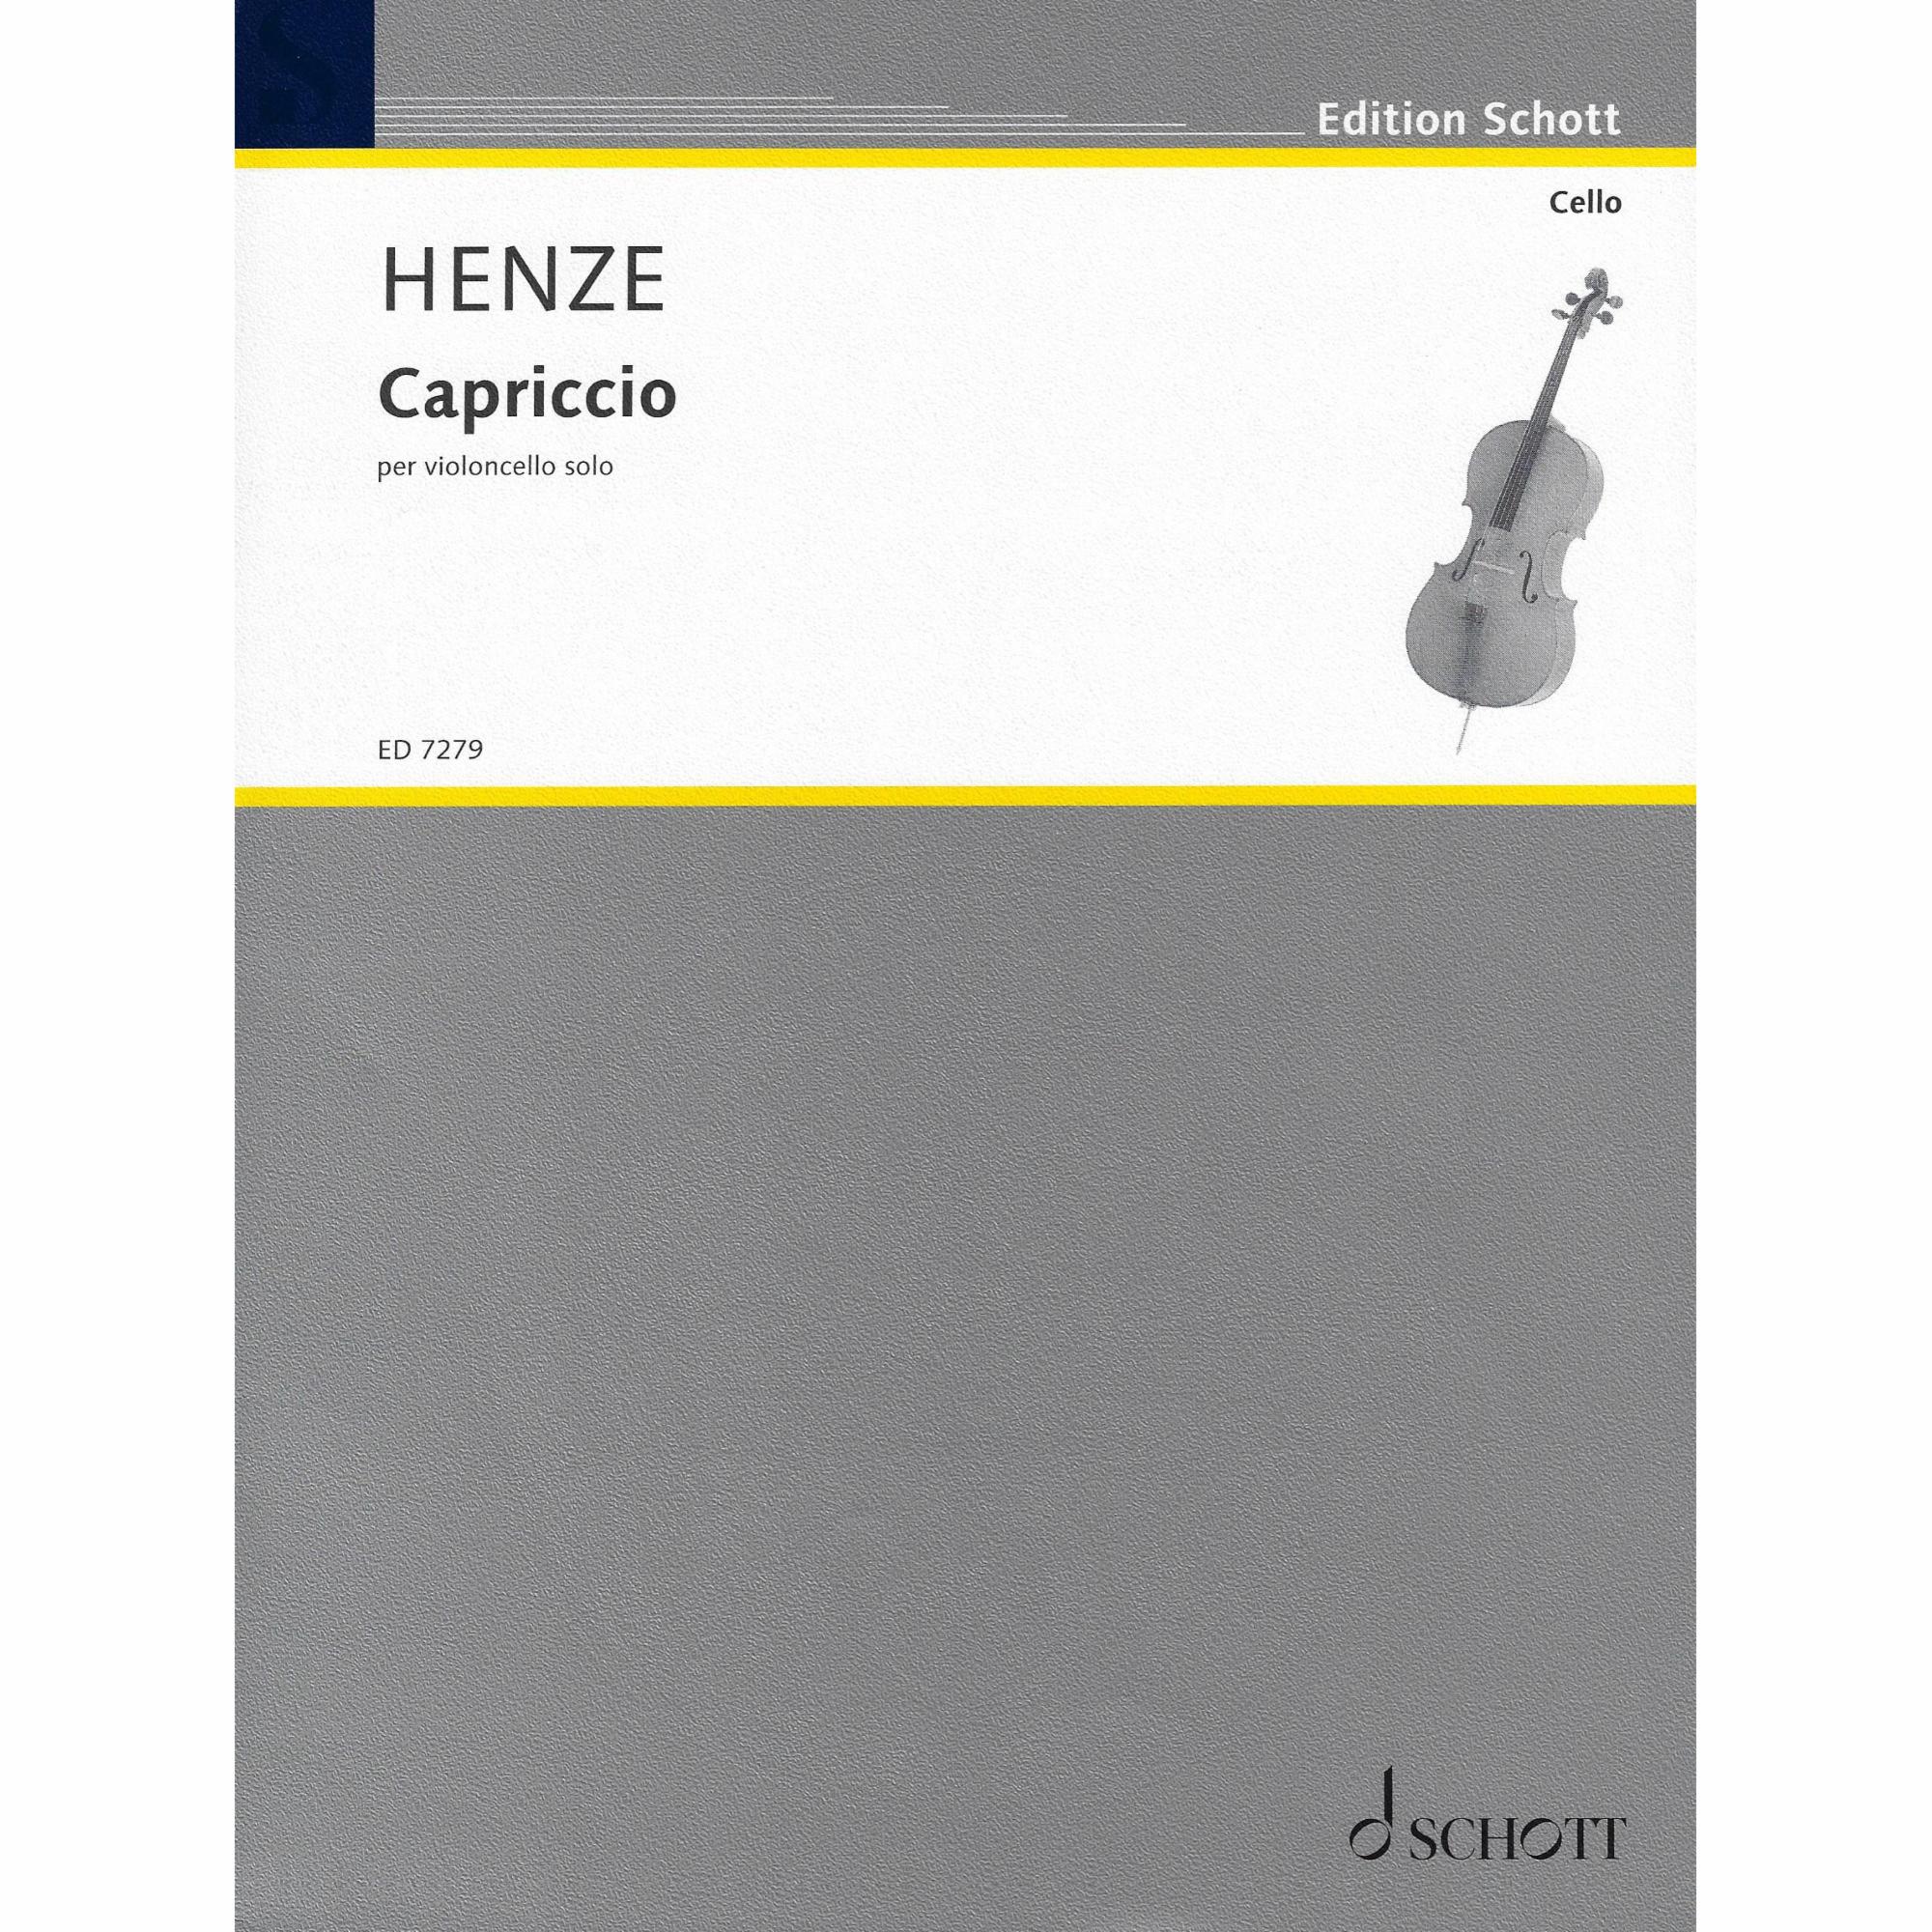 Henze -- Capriccio for Solo Cello